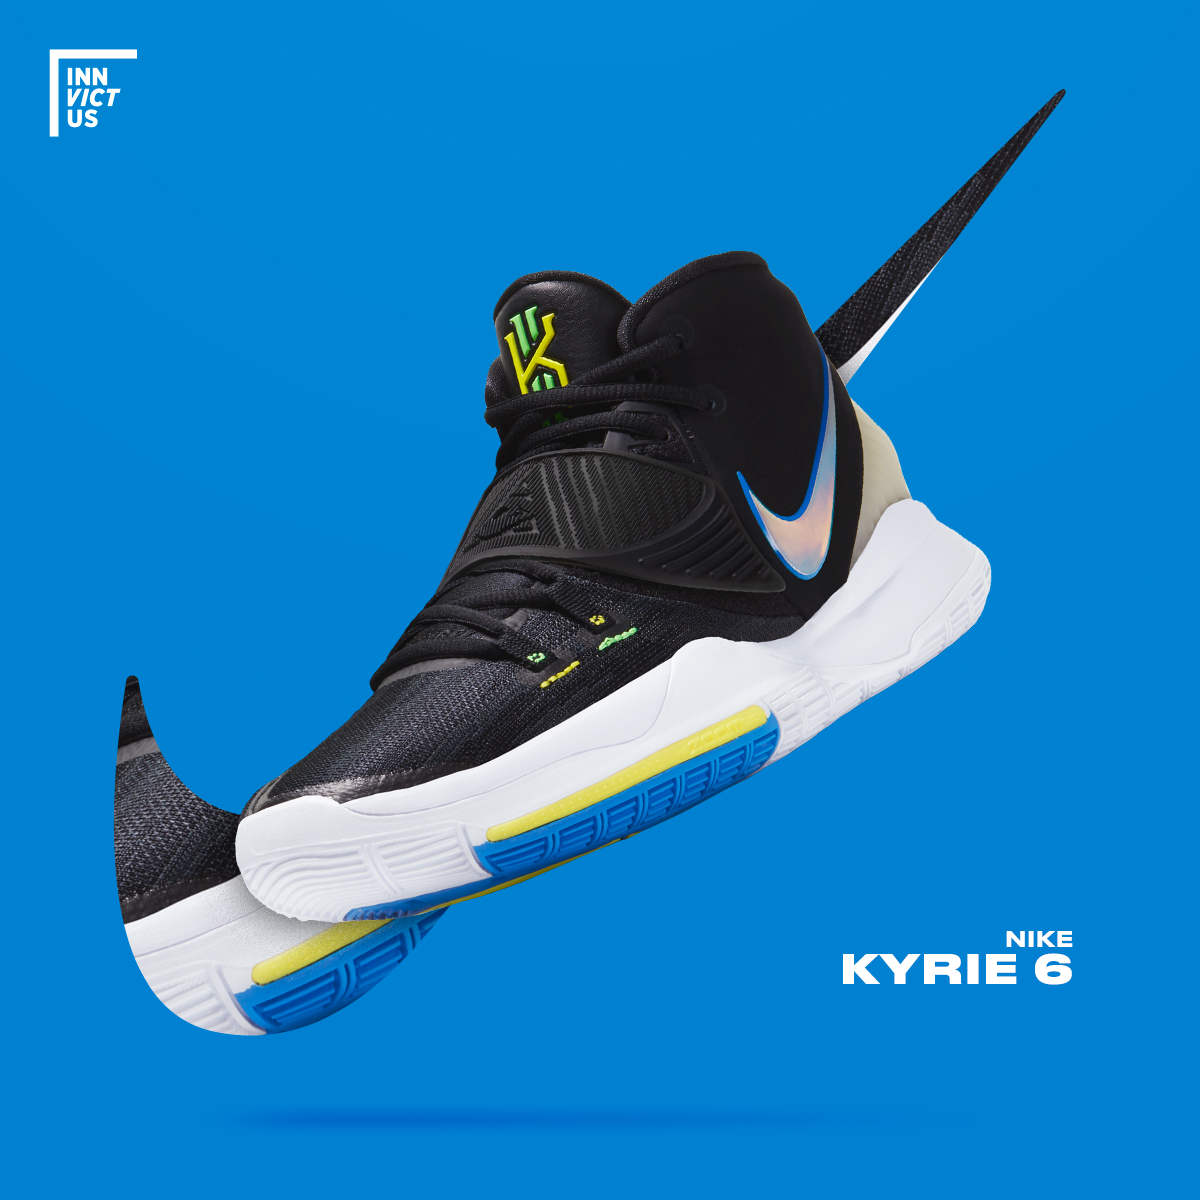 on Twitter: "Un nuevo colorway del Nike Kyrie 6 esta disponible en https://t.co/dXRHl6gexS!!! ¿Swoosh iridescente? ¿Talón que brilla en la oscuridad? Este Kyrie 6 lo tiene todo! https://t.co/Yb8MK4Gykb https://t.co/biTcS6OooM" / Twitter